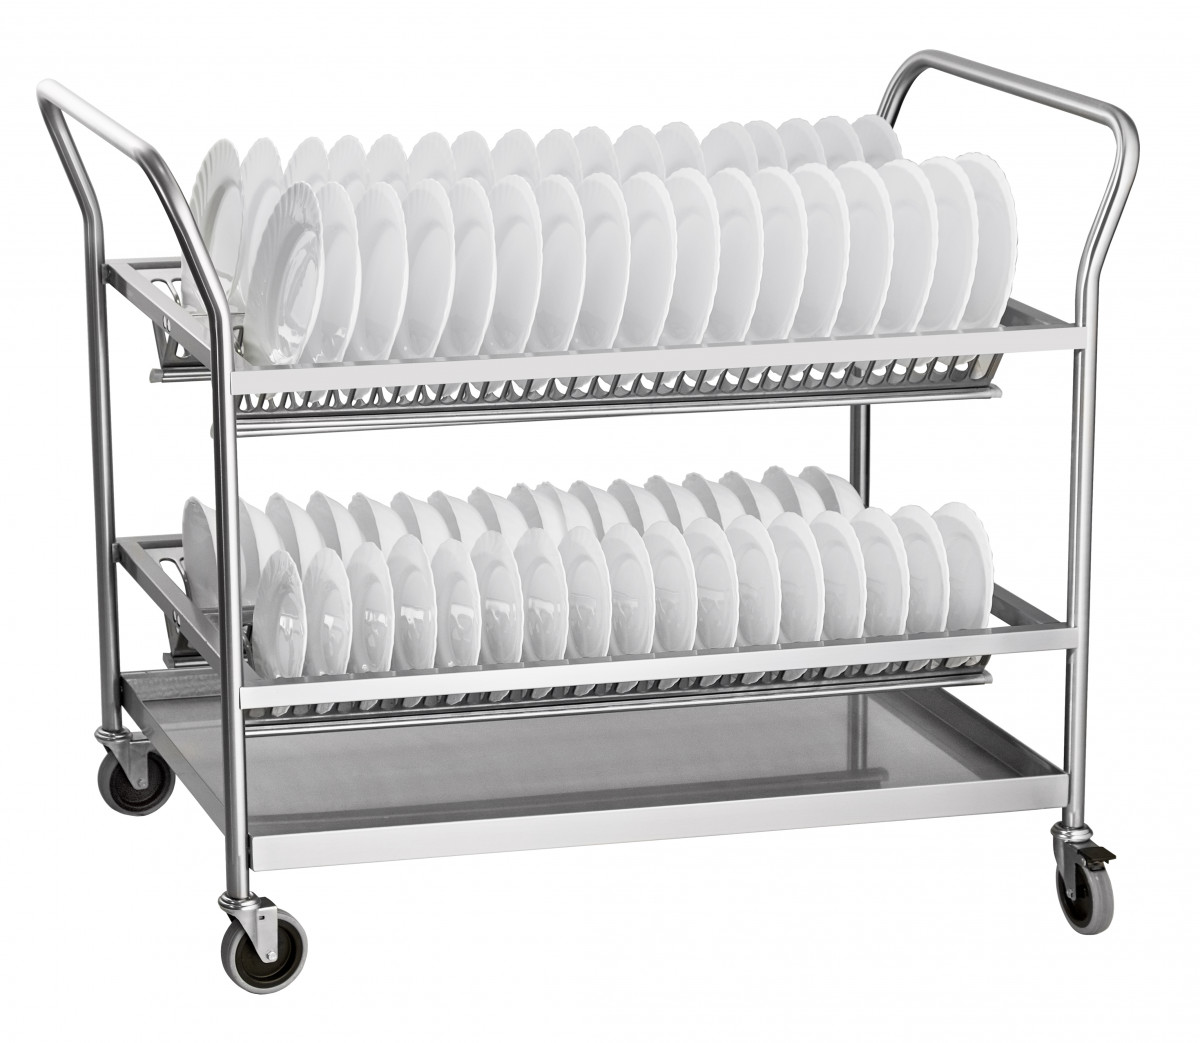 ABAT ТСТ-100-4 Машины посудомоечные